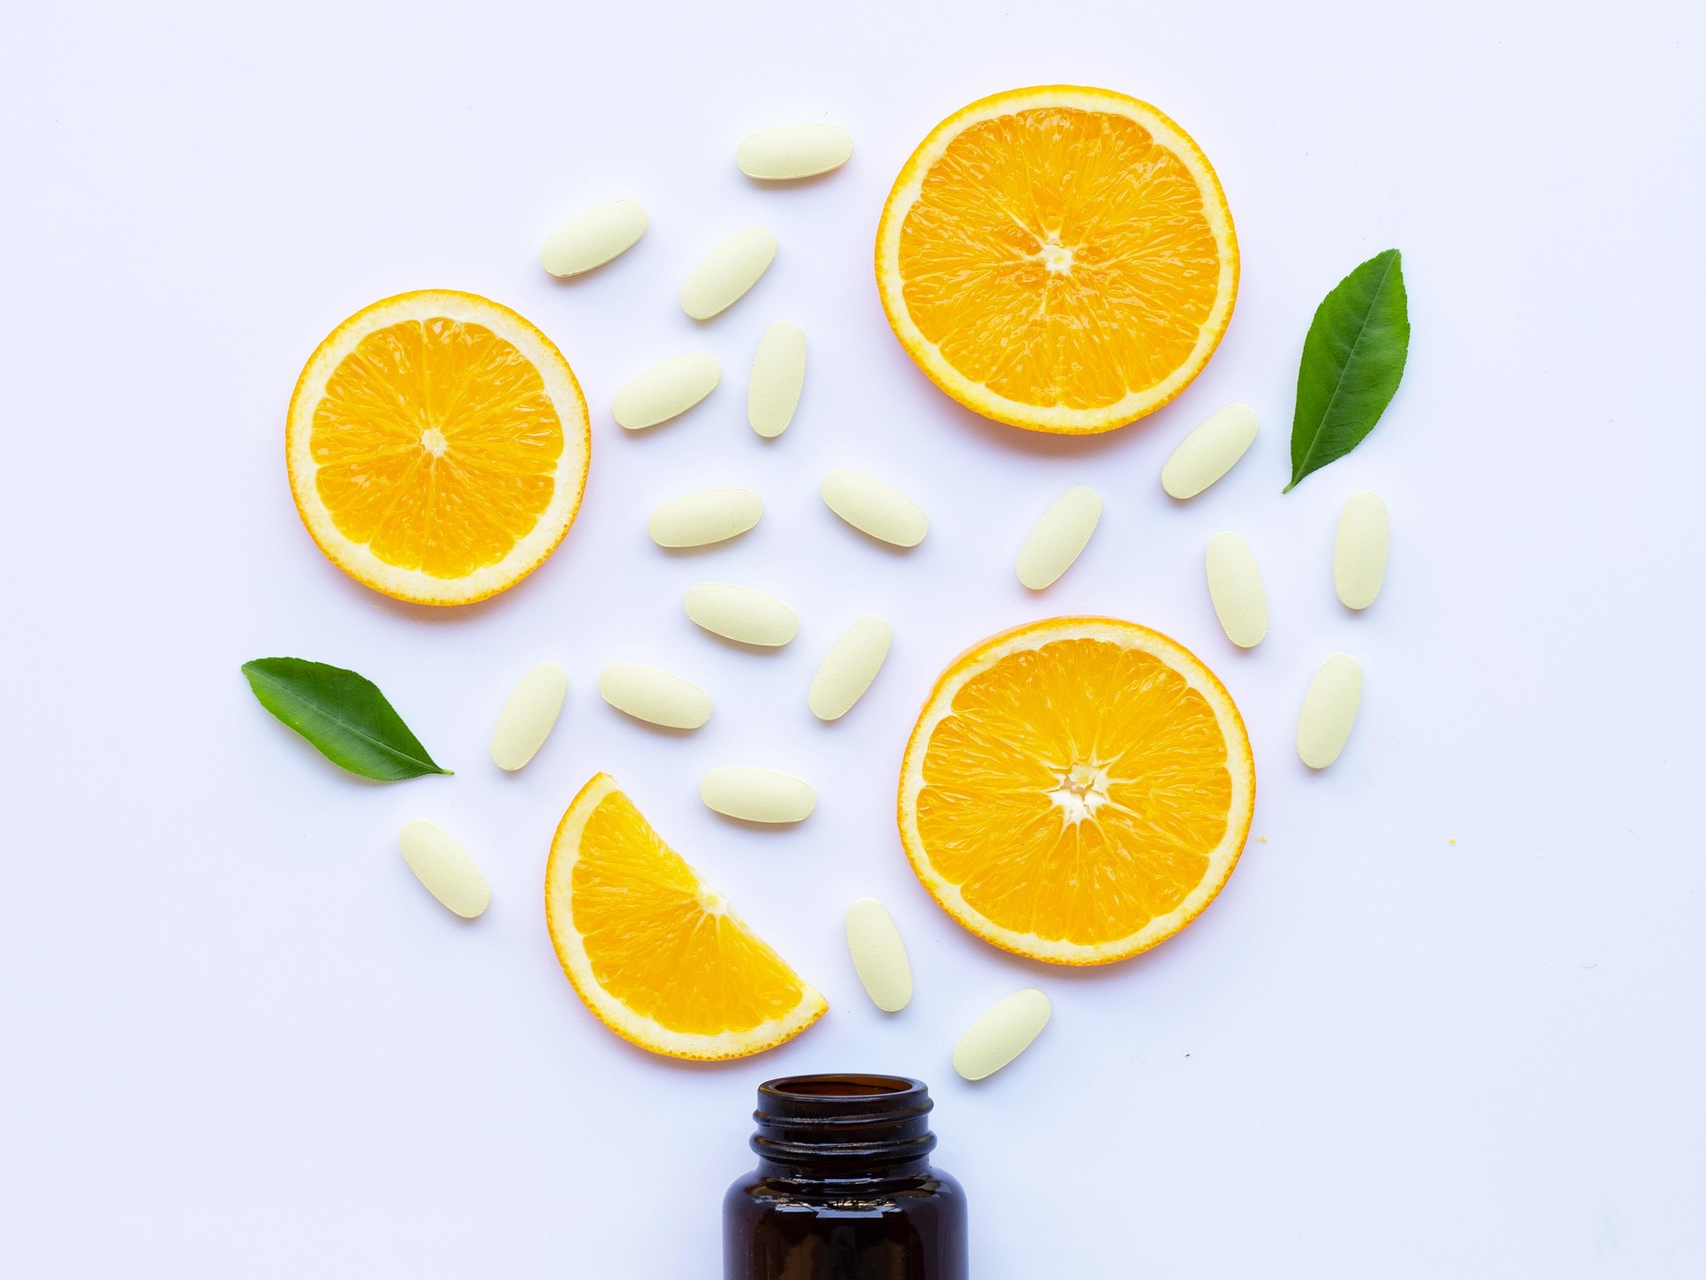 6 витаминов, которые опасно принимать без назначения врача | MARIECLAIRE